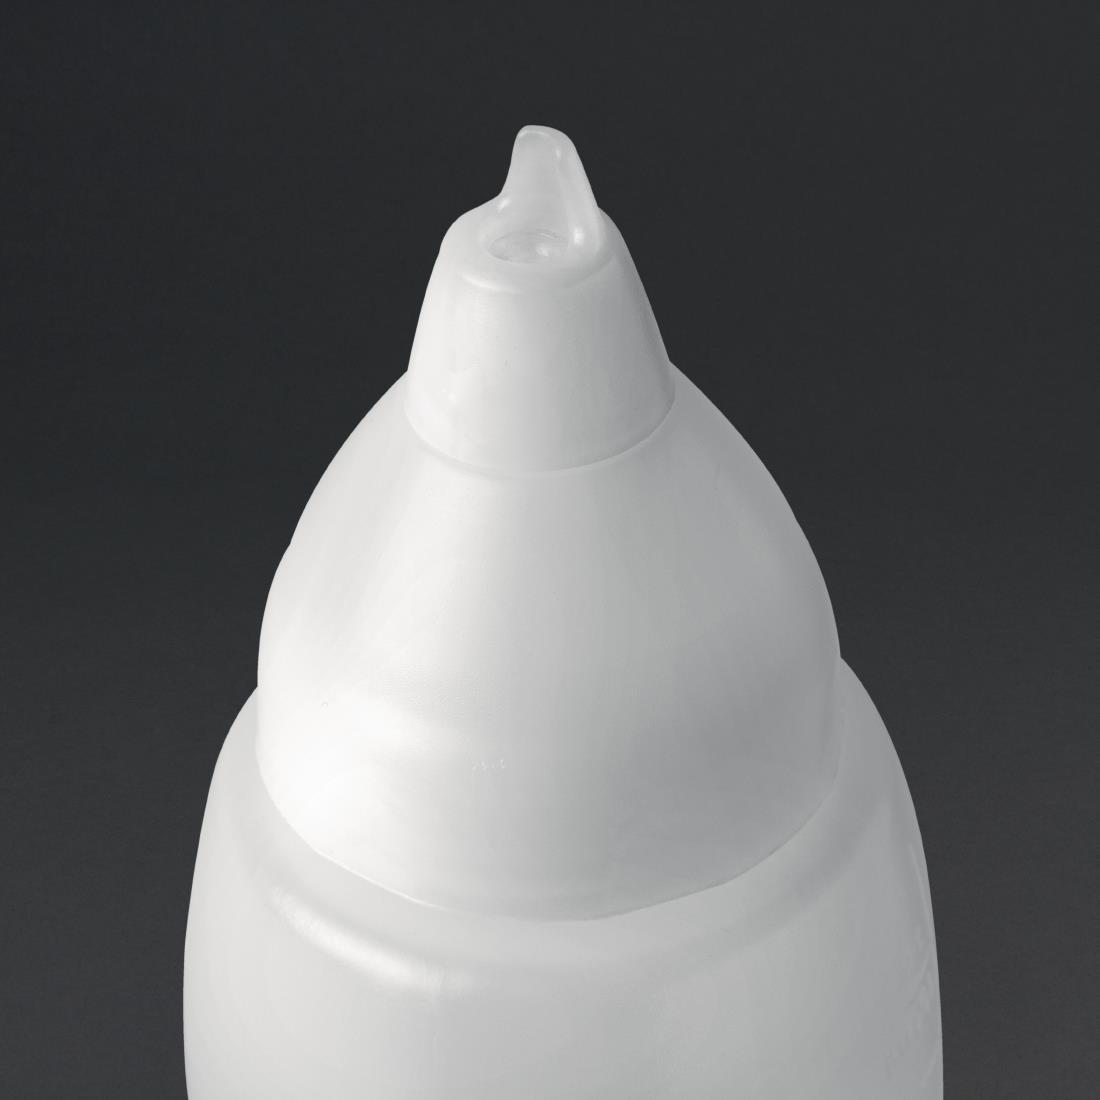 Araven Clear Non-Drip Sauce Bottle 24oz - CW113  - 2